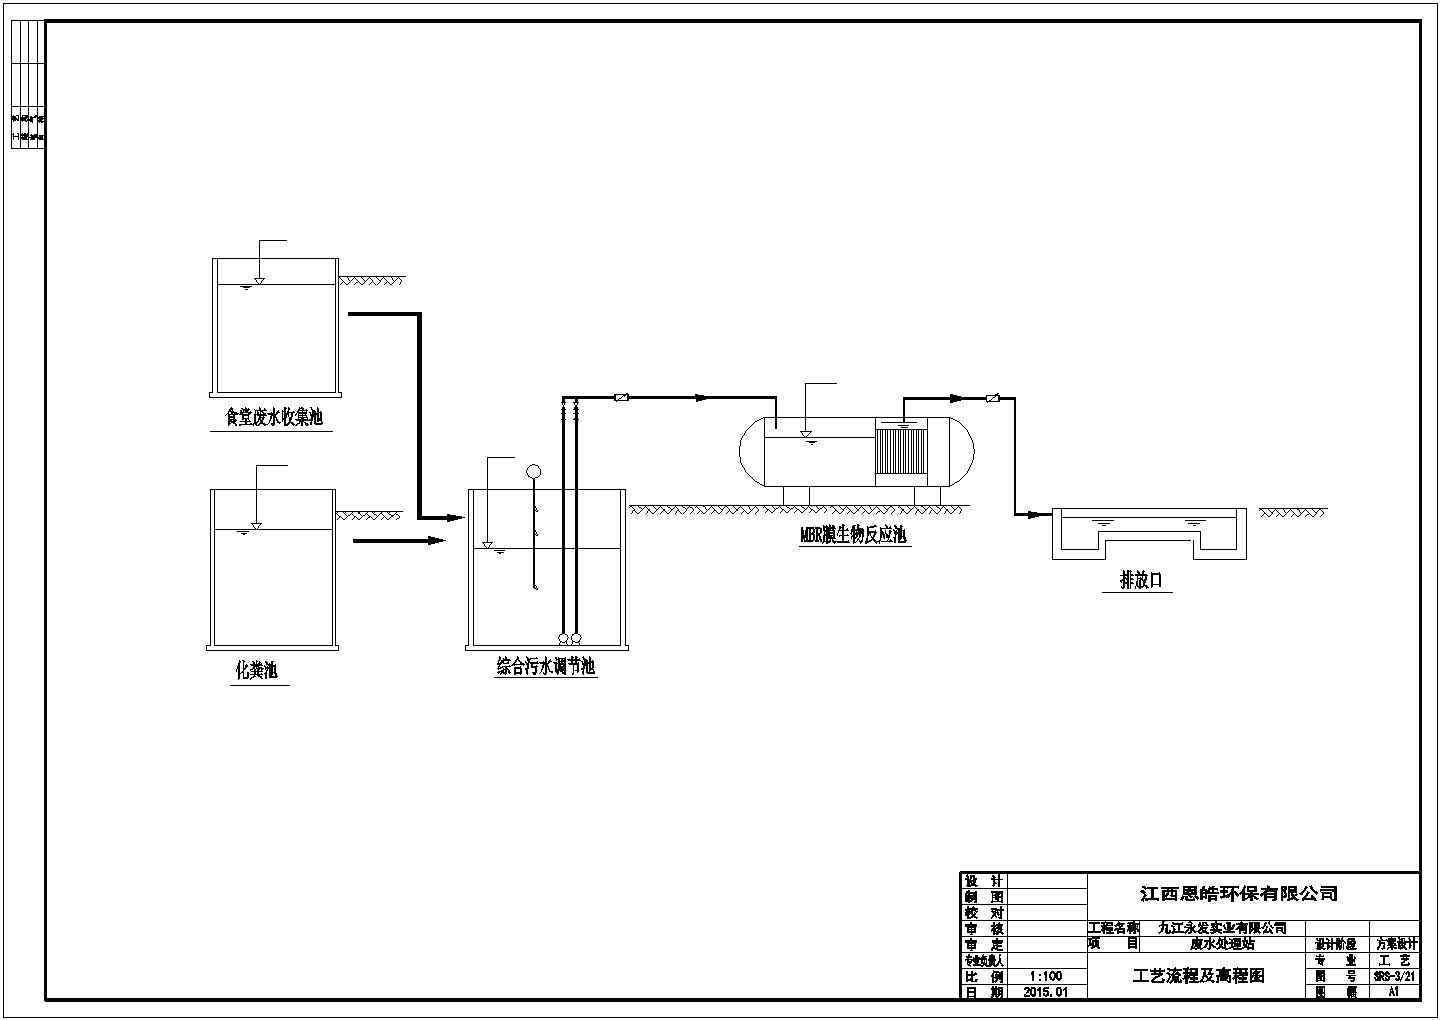 废水处理站生活污水处理流程图